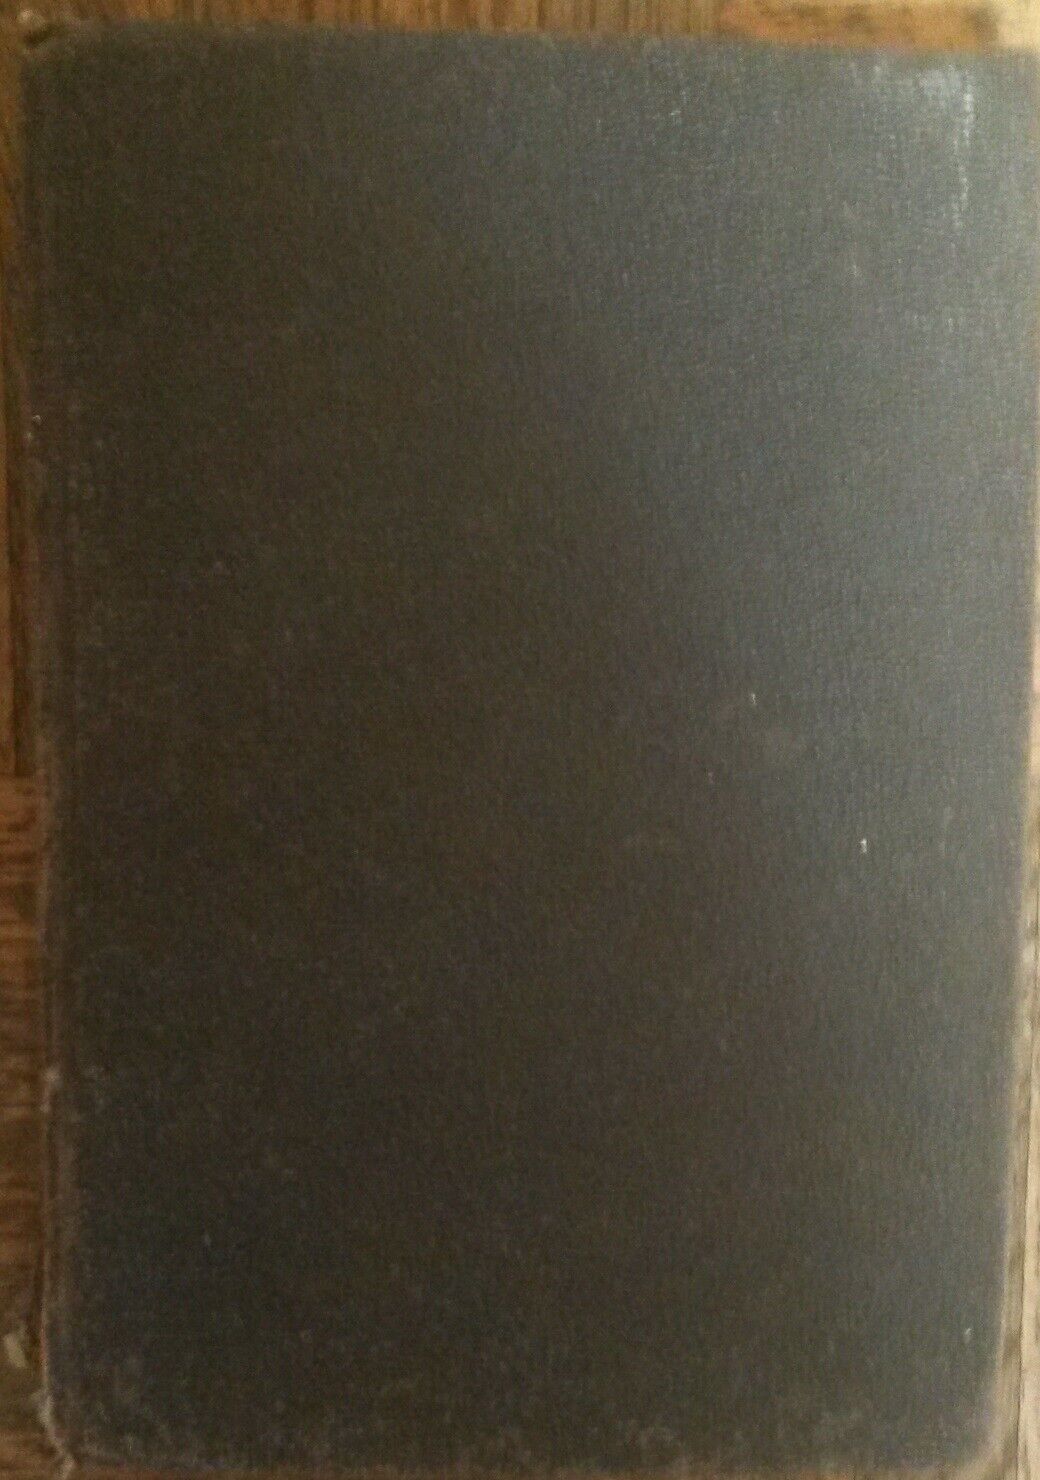 Trenta Novelle - Giovanni Boccacccio - Societ? Editrice Dante Alighieri,1908 - R